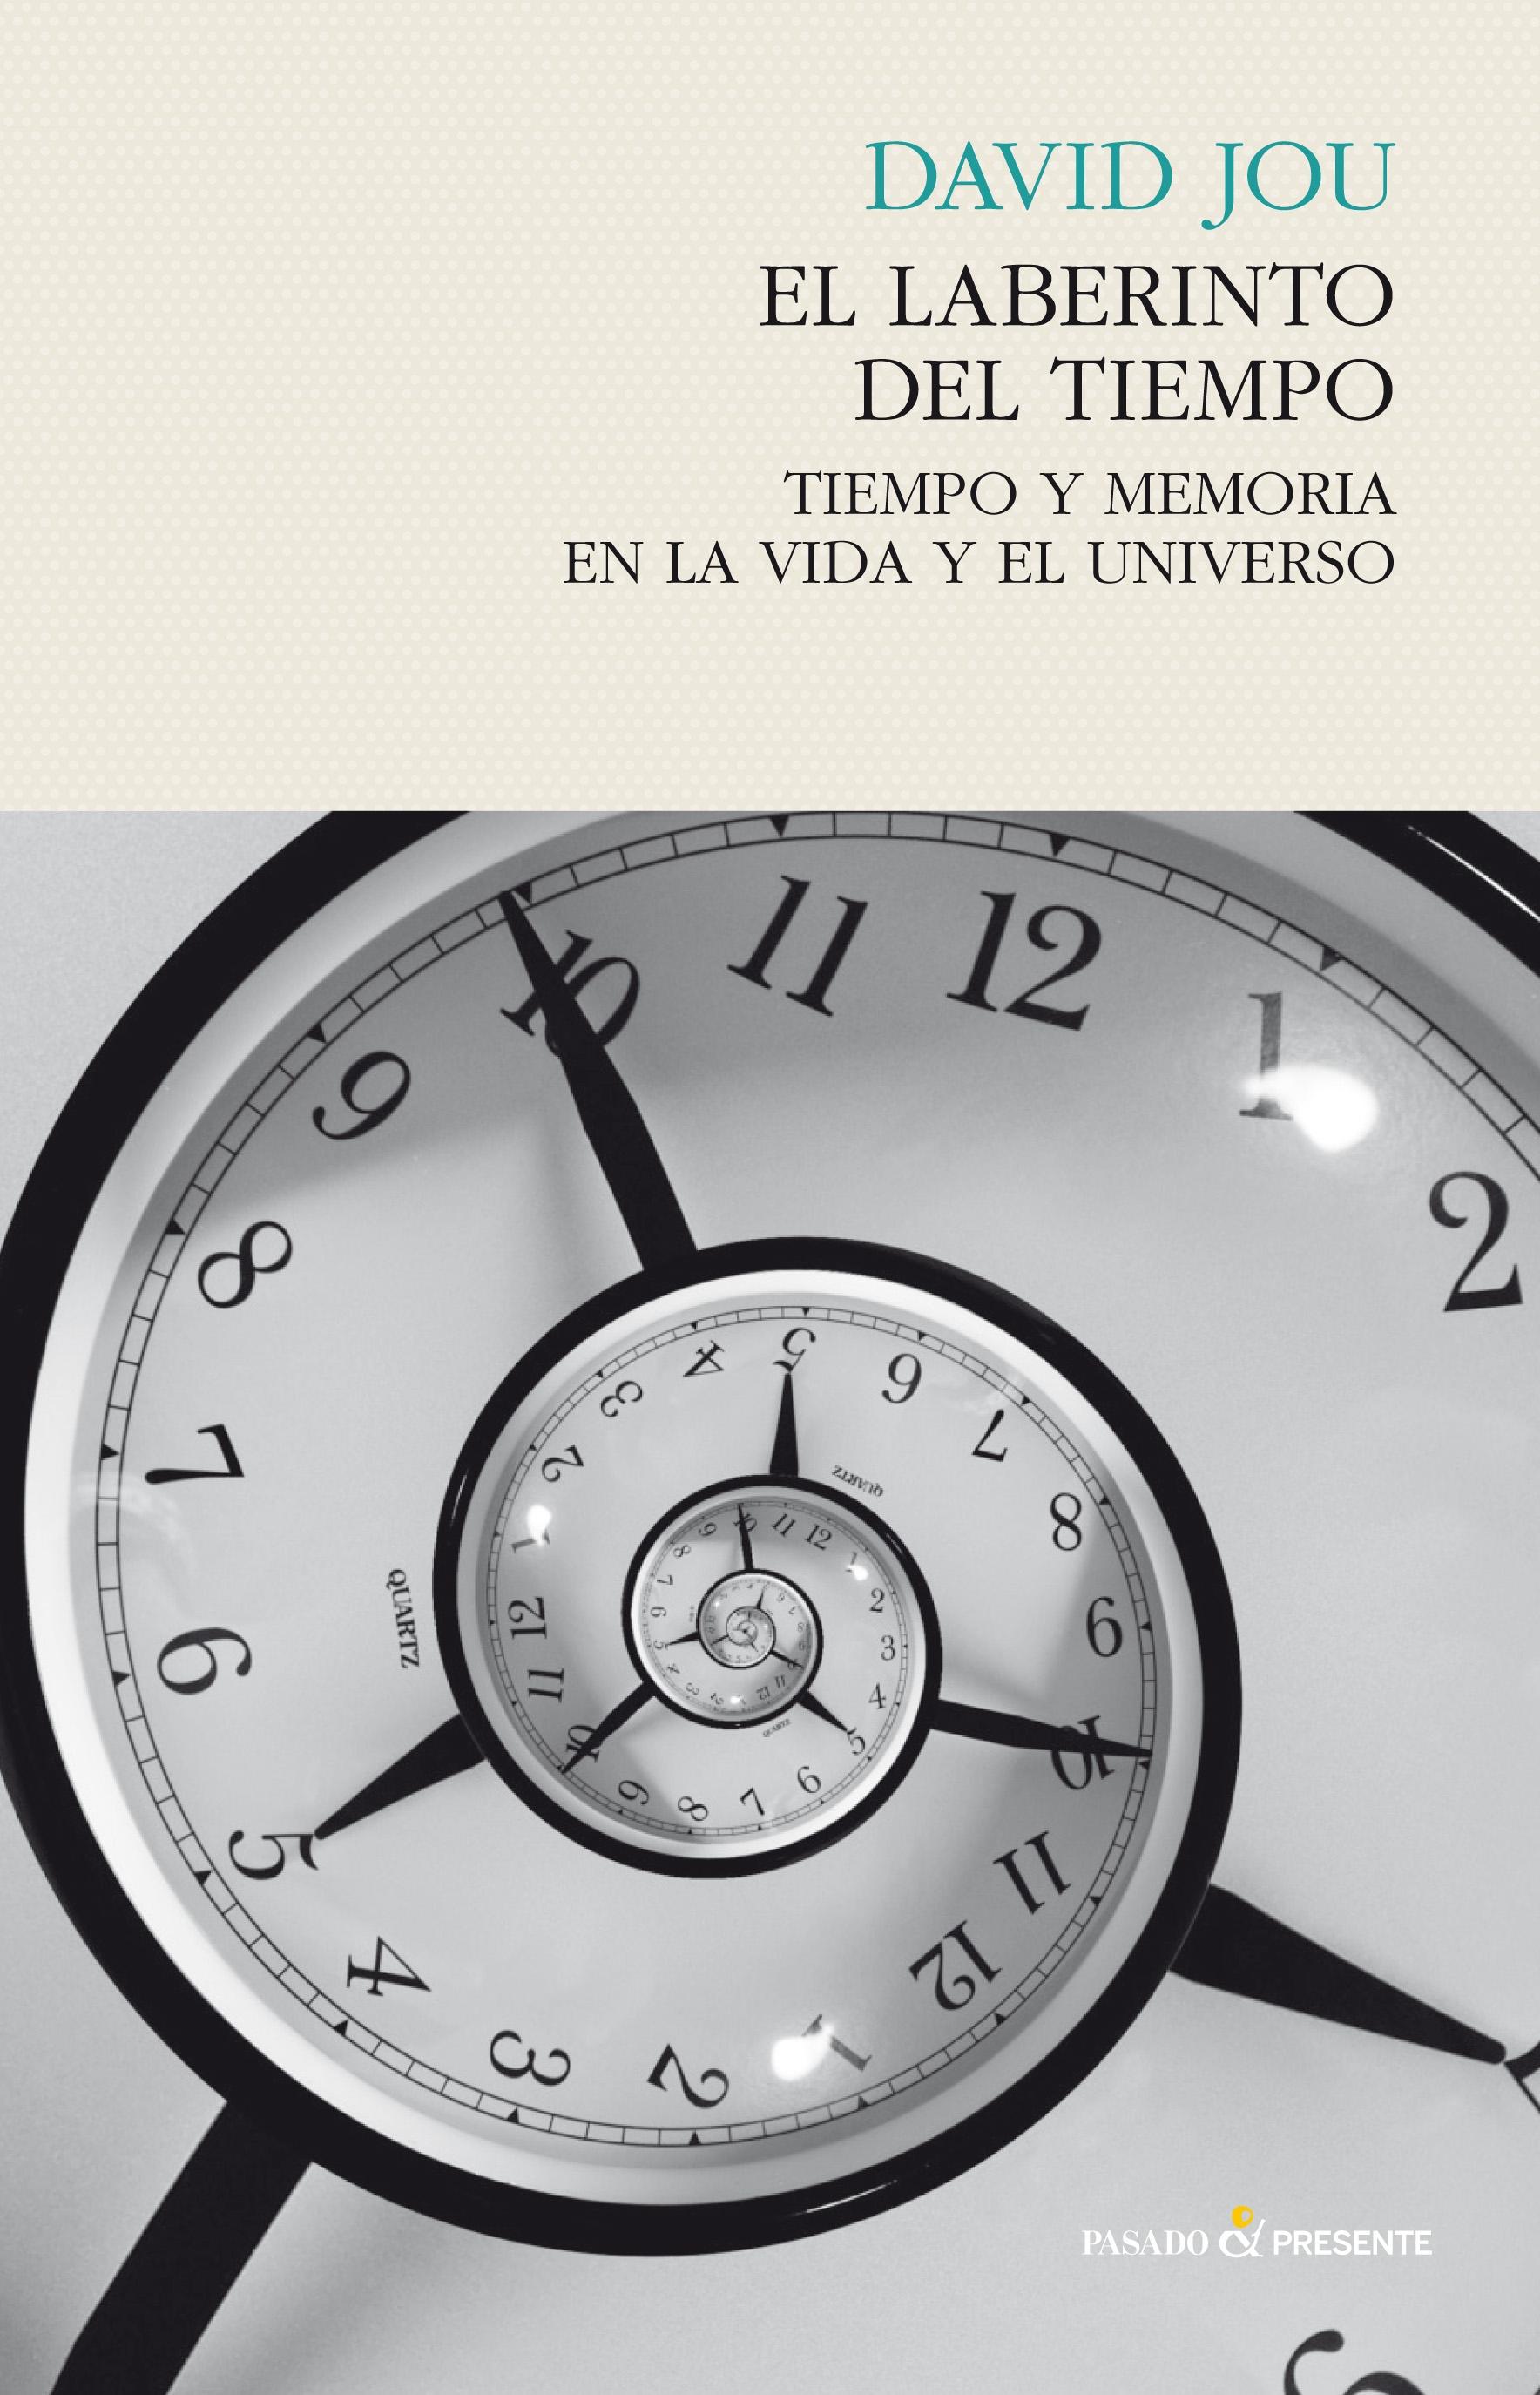 El laberinto del tiempo "Tiempo y memoria en la vida y el universo"